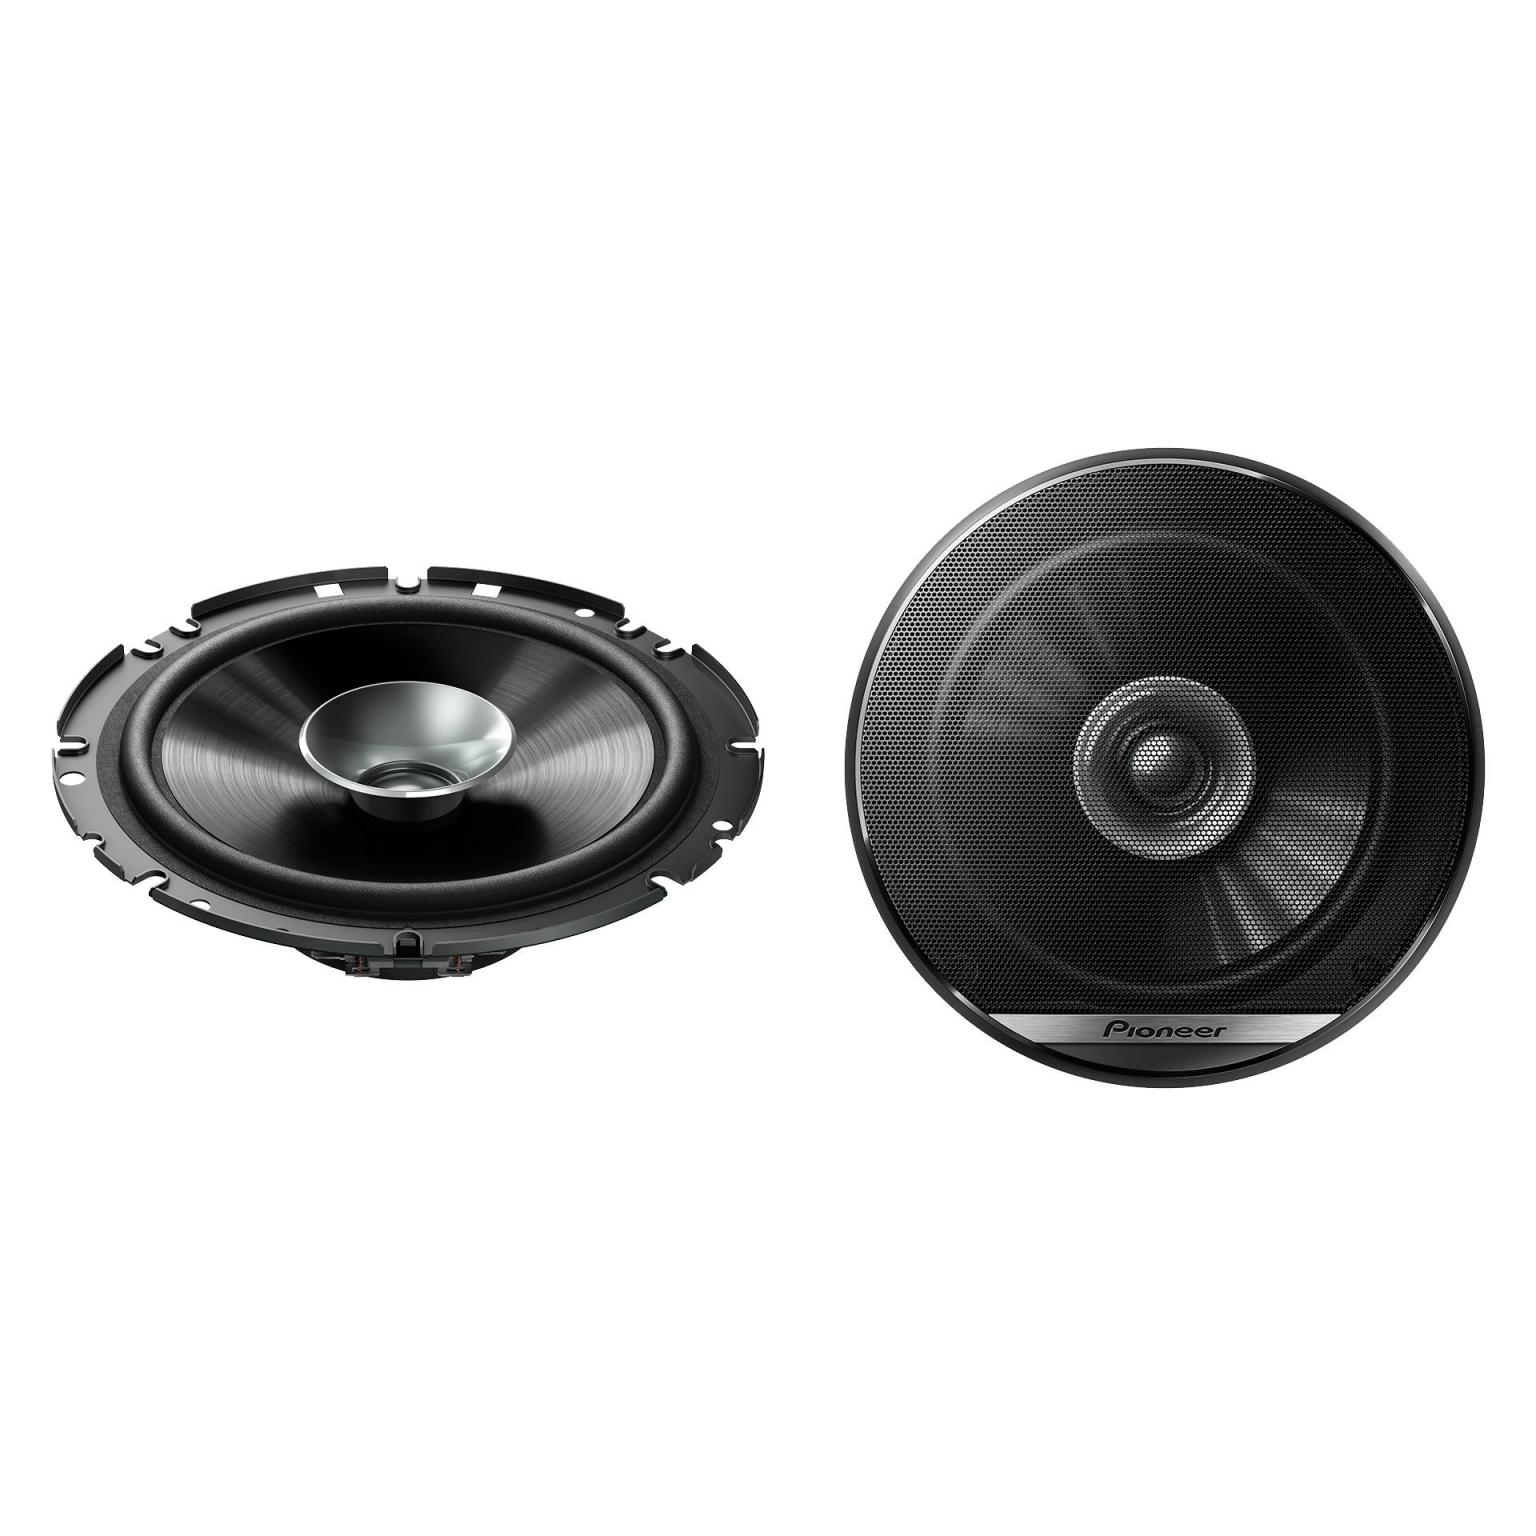 Fullrange speakers - 6.5 Inch - Pioneer